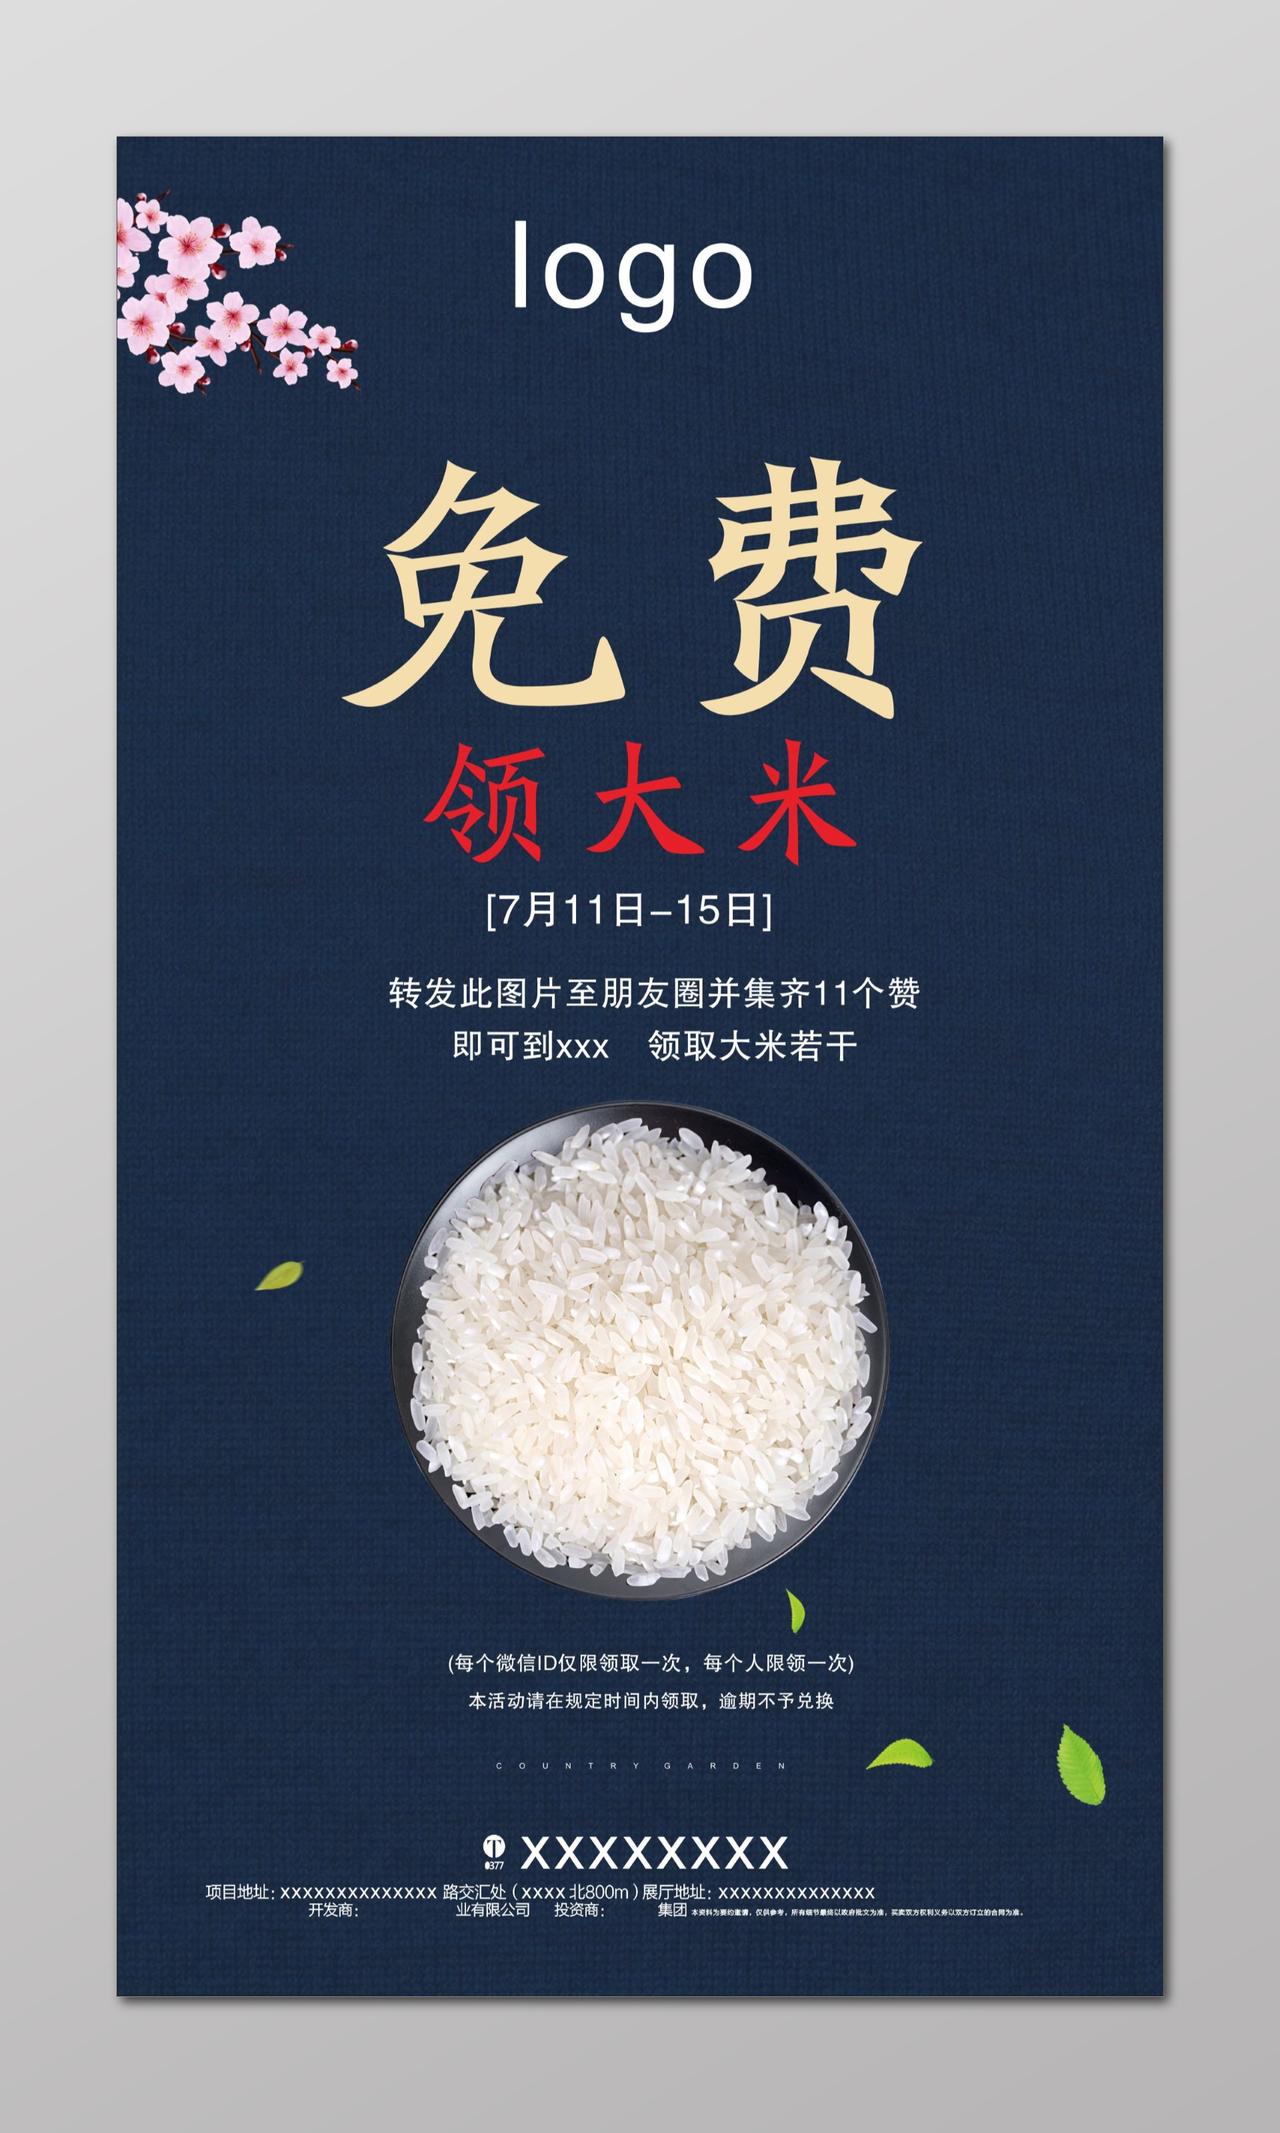 大米海报送米活动免费领大米